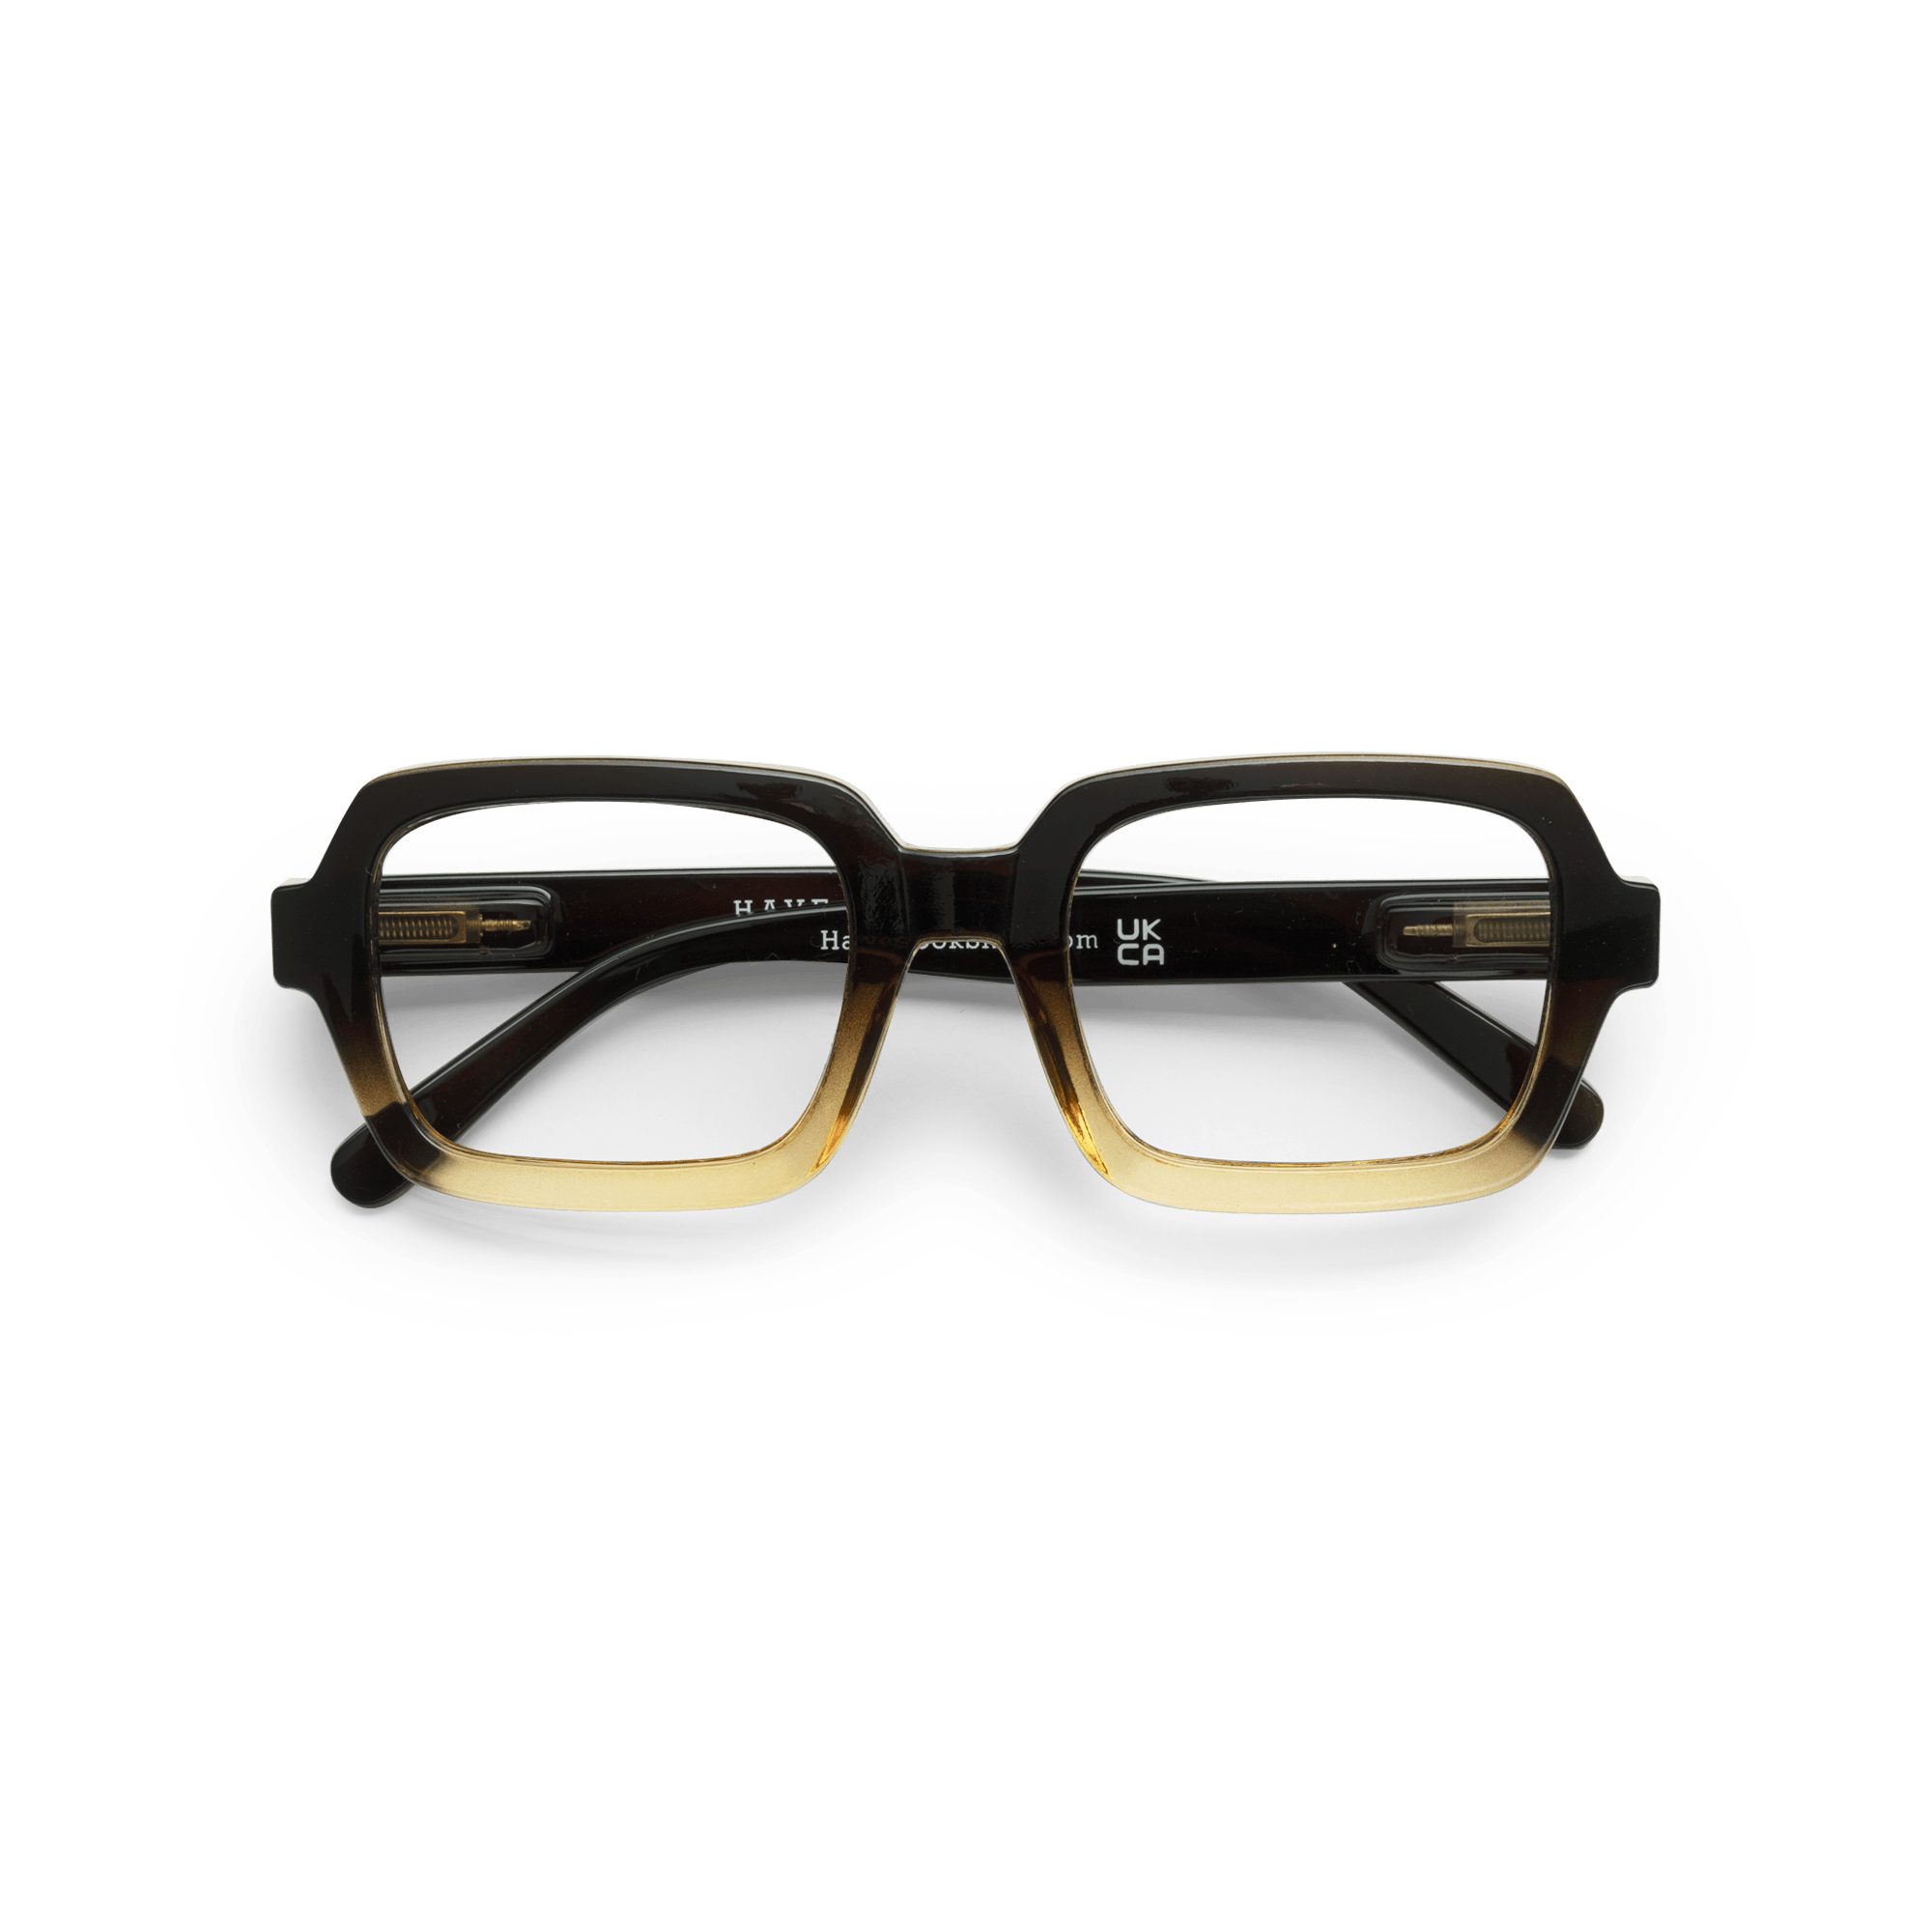 Minusbriller Square - black/brown